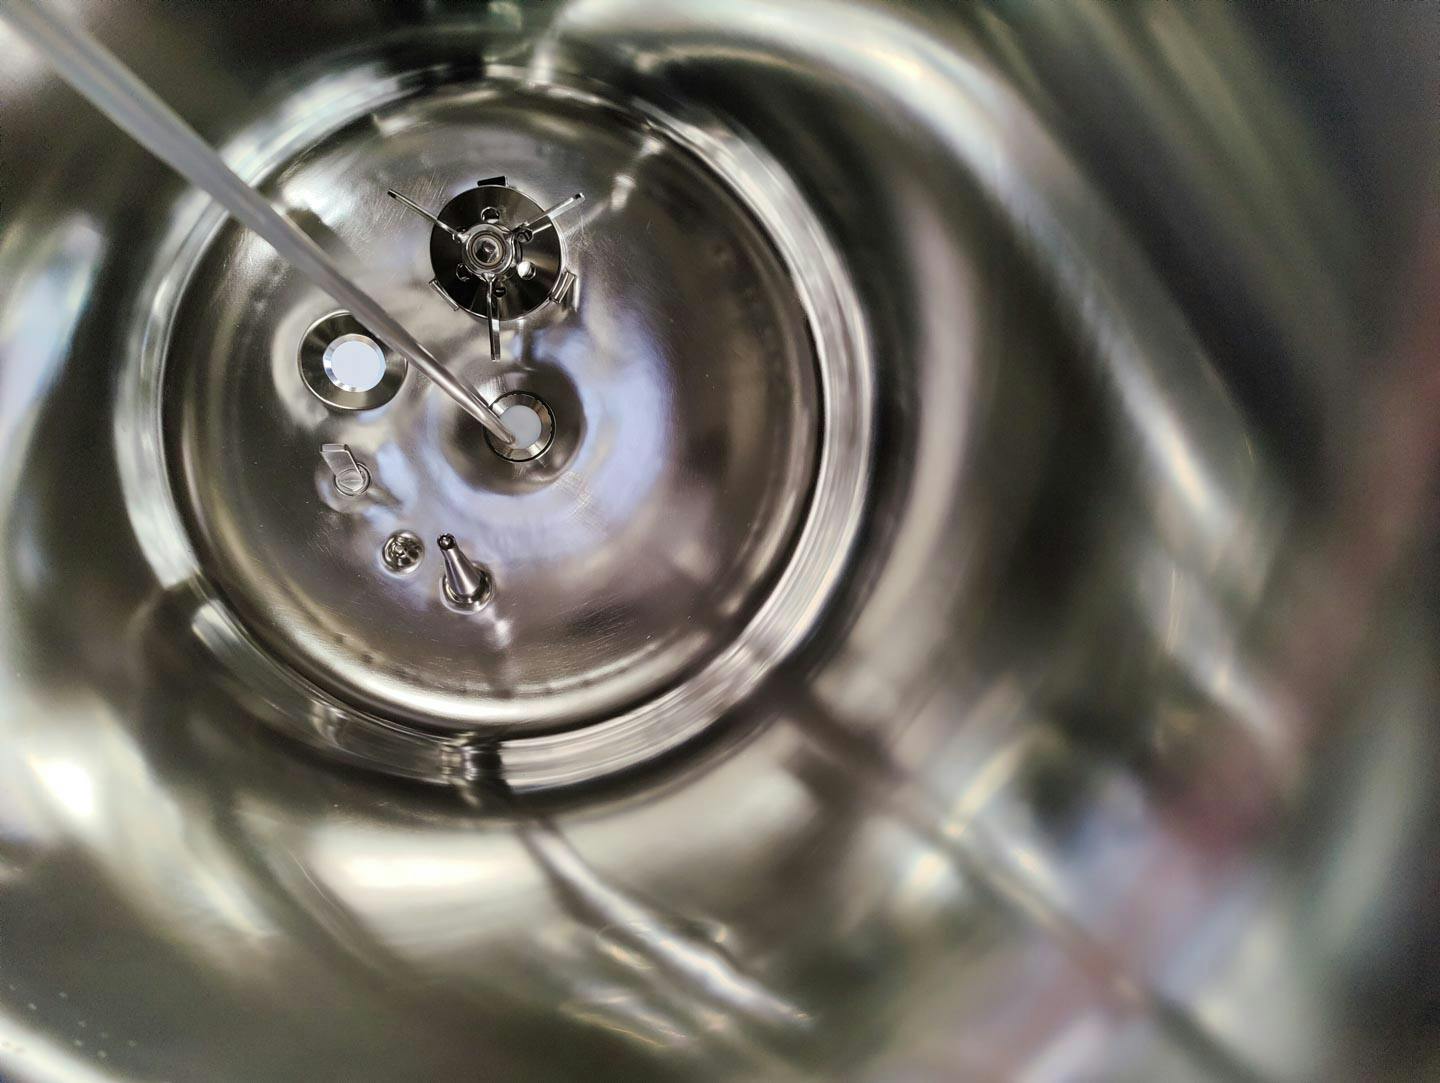 Edelstahl Maurer 130 Ltr. - Mirror-Polished Fraction Collector (Pharma Design) - Nerezové reaktor - image 9